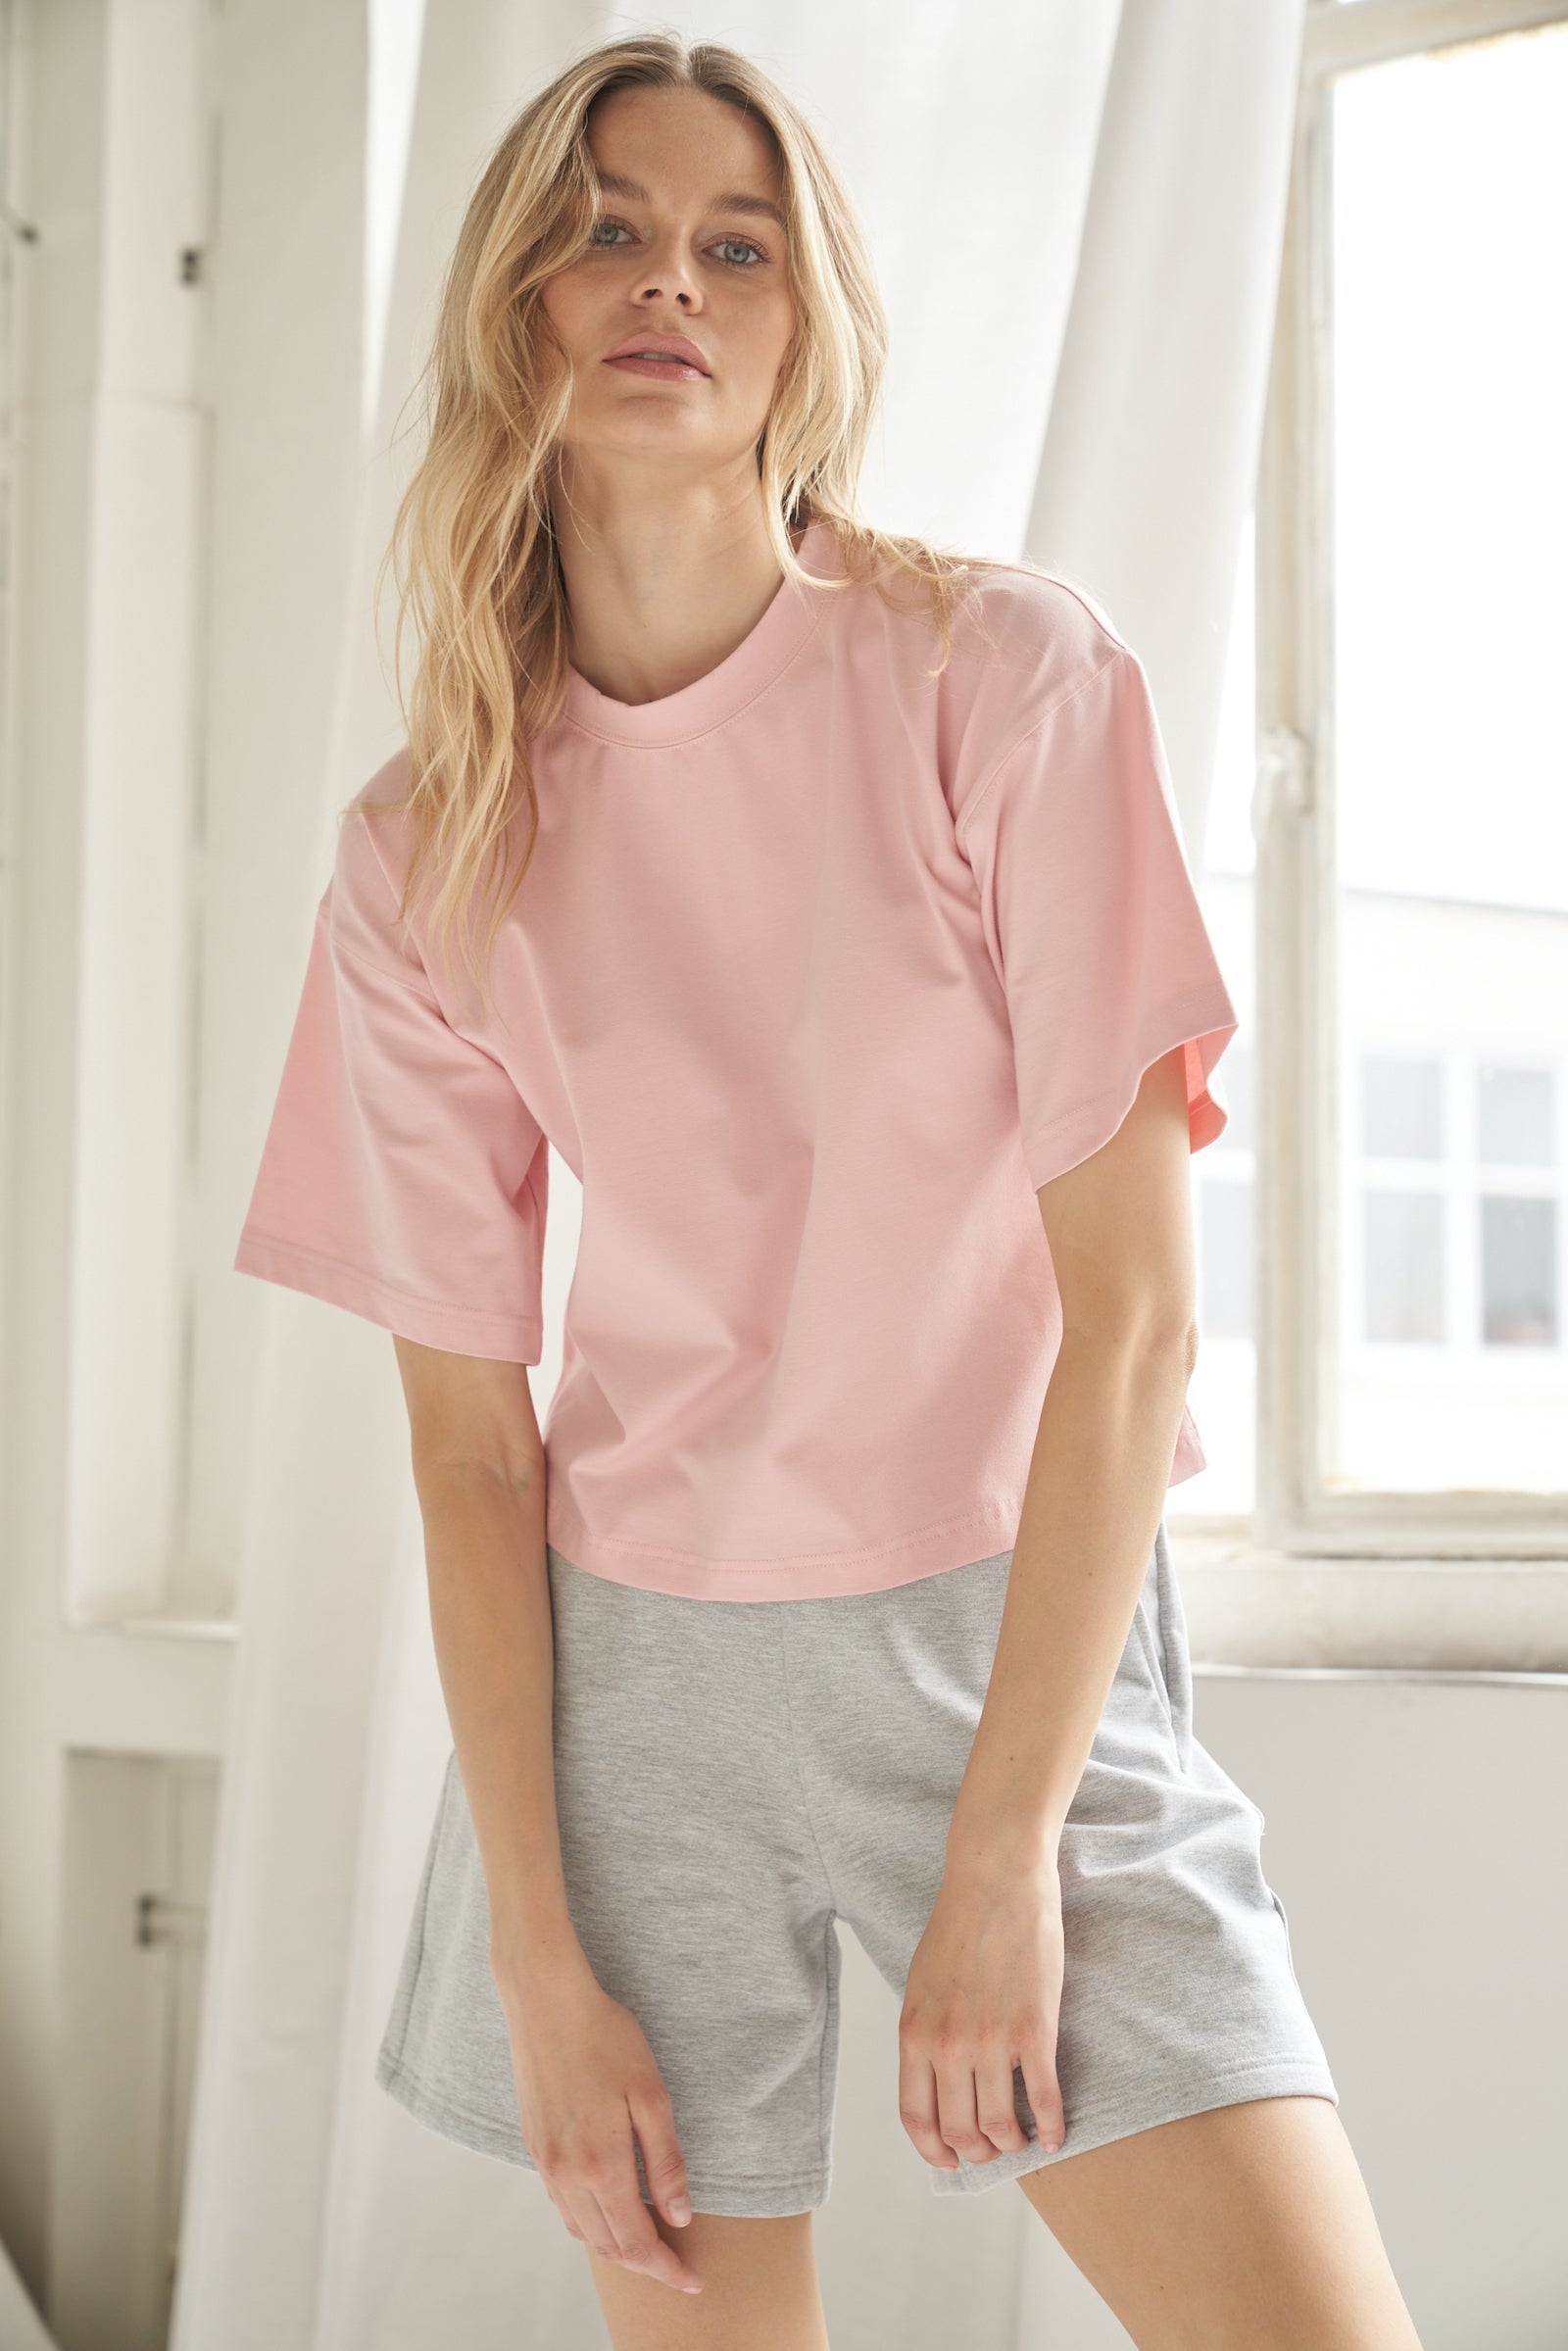 Unser T-Shirt aus Bio-Baumwolle in der Farbe rosa von der Marke Bellasor wird von einem blonden Model getragen. Sie zeigt das T-Shirt von vorne, befindet sich in einem hellen Raum und das Sonnenlicht scheint durch die Fenster im Hintergrund.